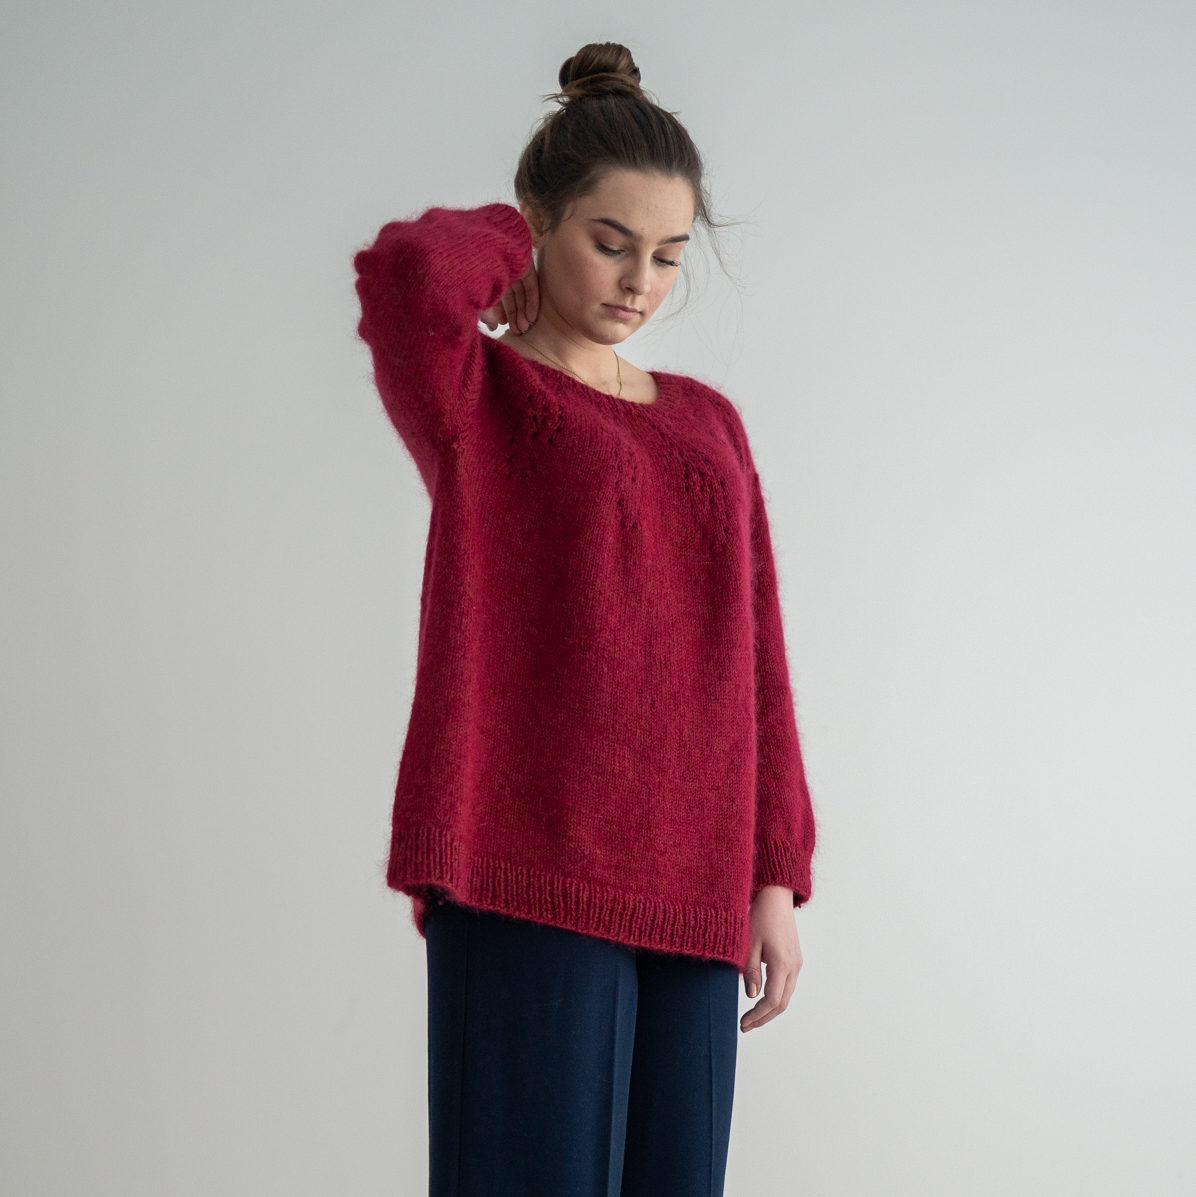  - Aurelia sweater | Circular yoke sweater pattern - by HipKnitShop - 17/03/2020